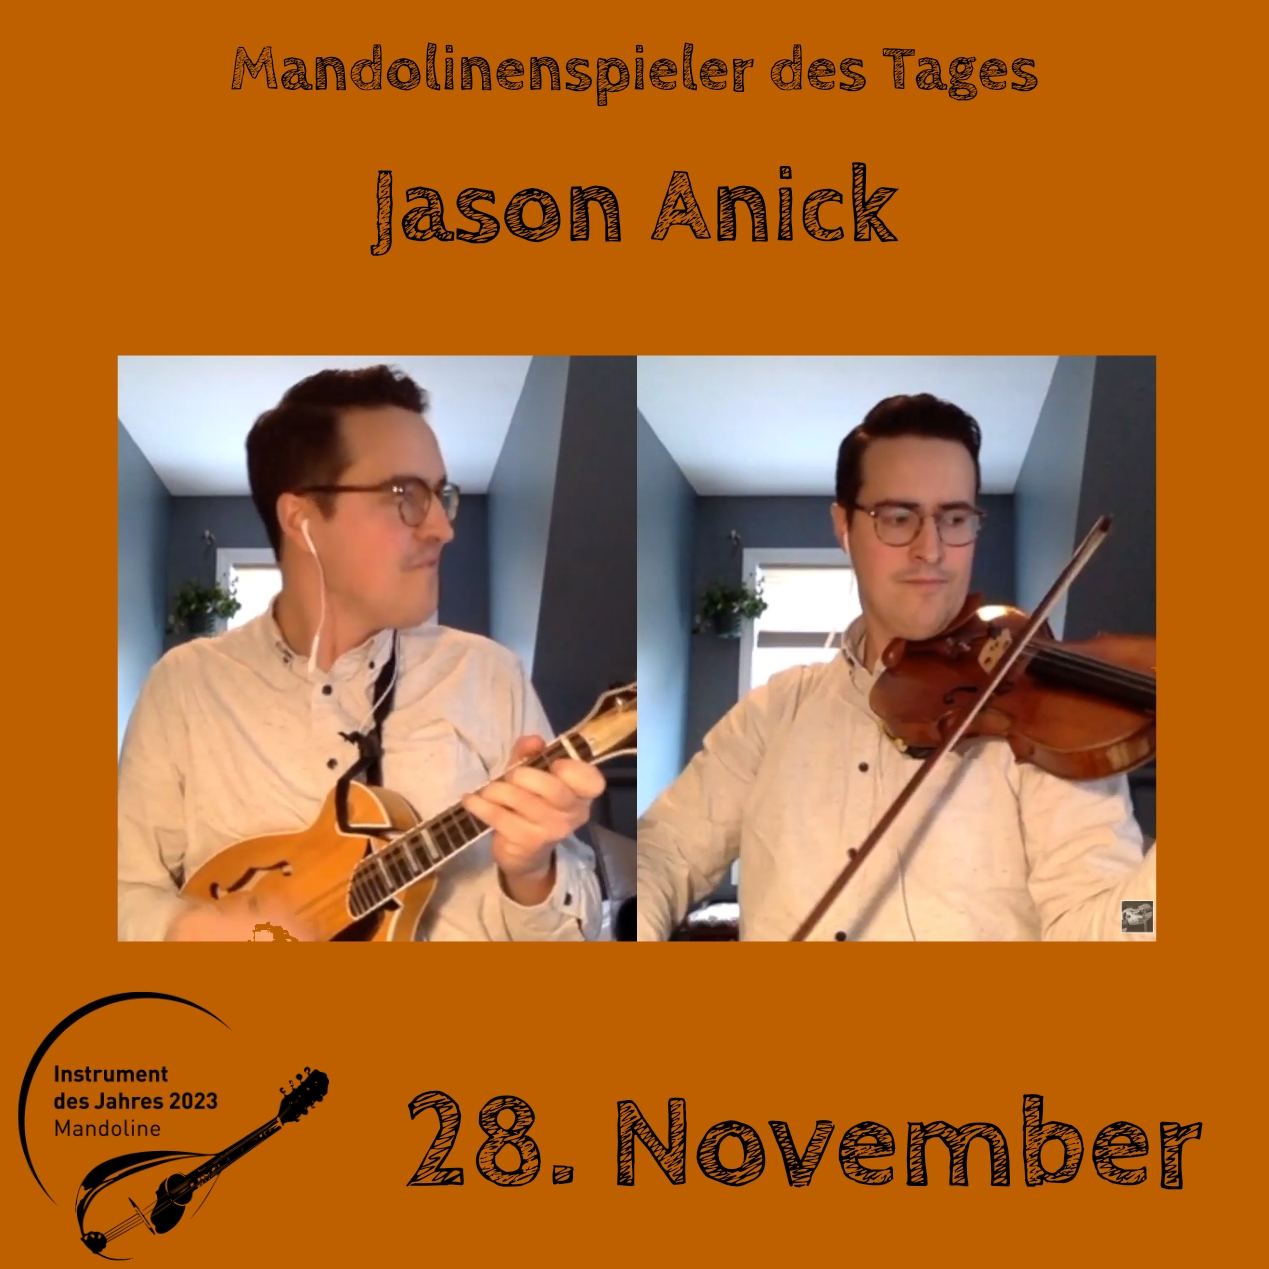 28. November - Jason Anick Instrument des Jahres 2023 Mandolinenspieler Mandolinenspielerin des Tages